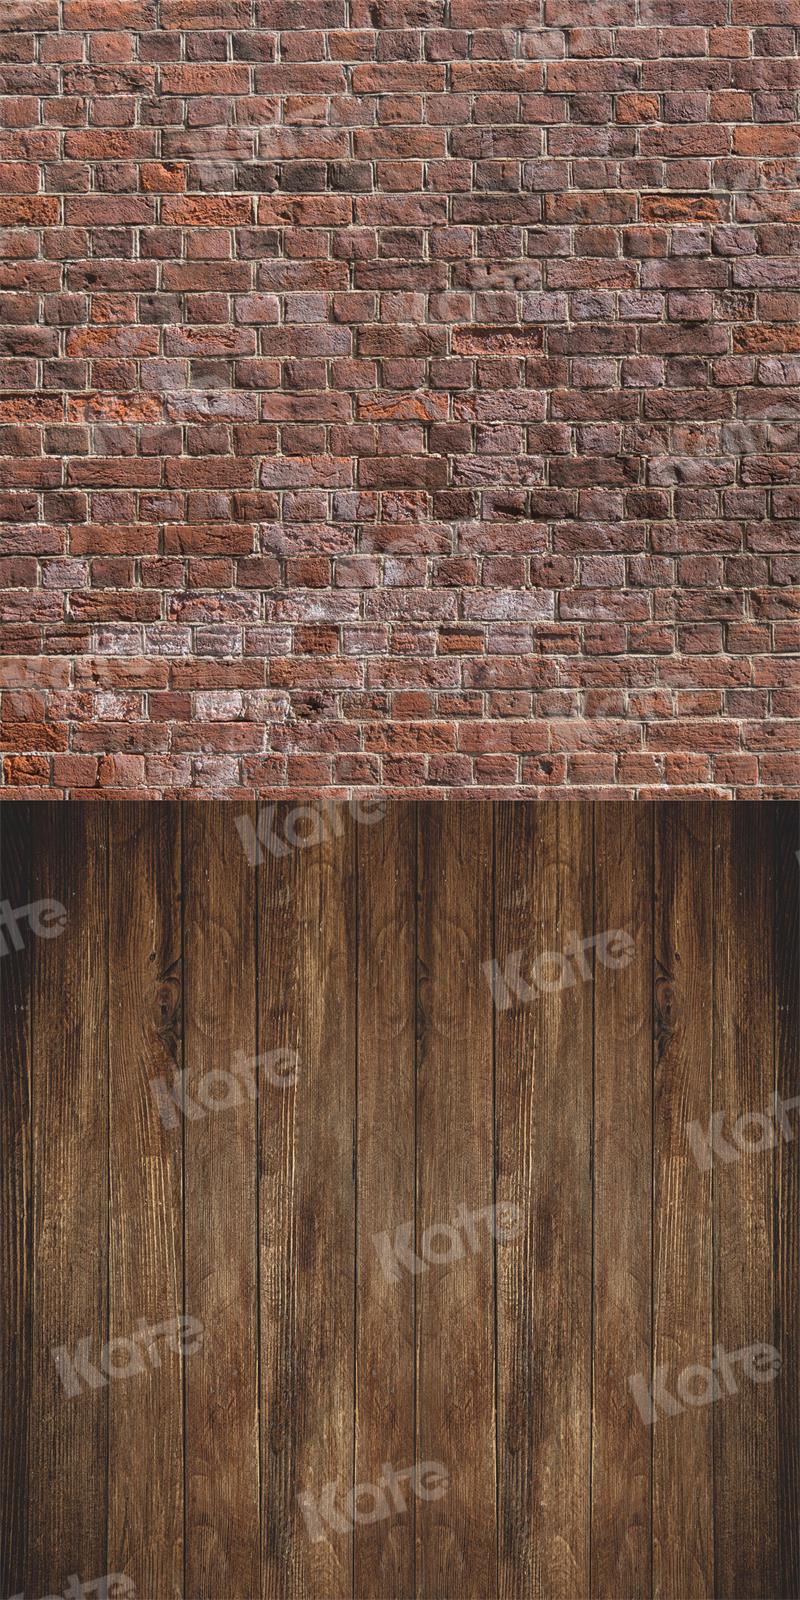 Kate Kombibackdrop Backstein Wand Hintergrund Holz für Fotografie rot braun